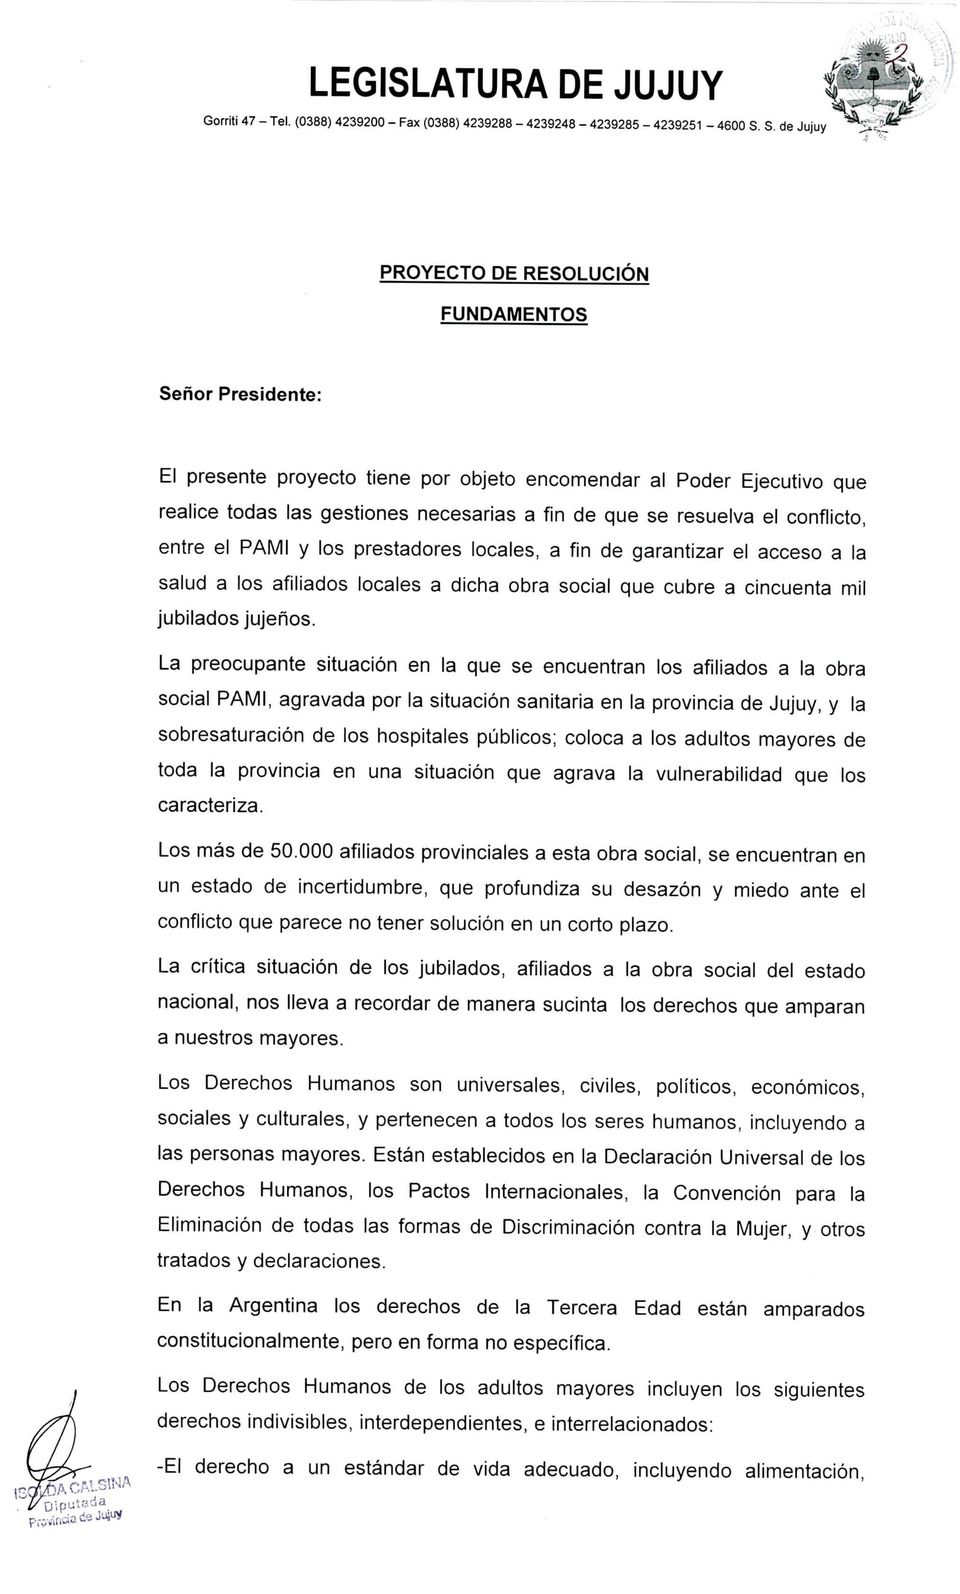 La preocupante situación en la que se encuentran los afiliados a la obra social PAMI, agravada por la situación sanitaria en la provincia de Jujuy, y la sobresaturación de los hospitales públicos;